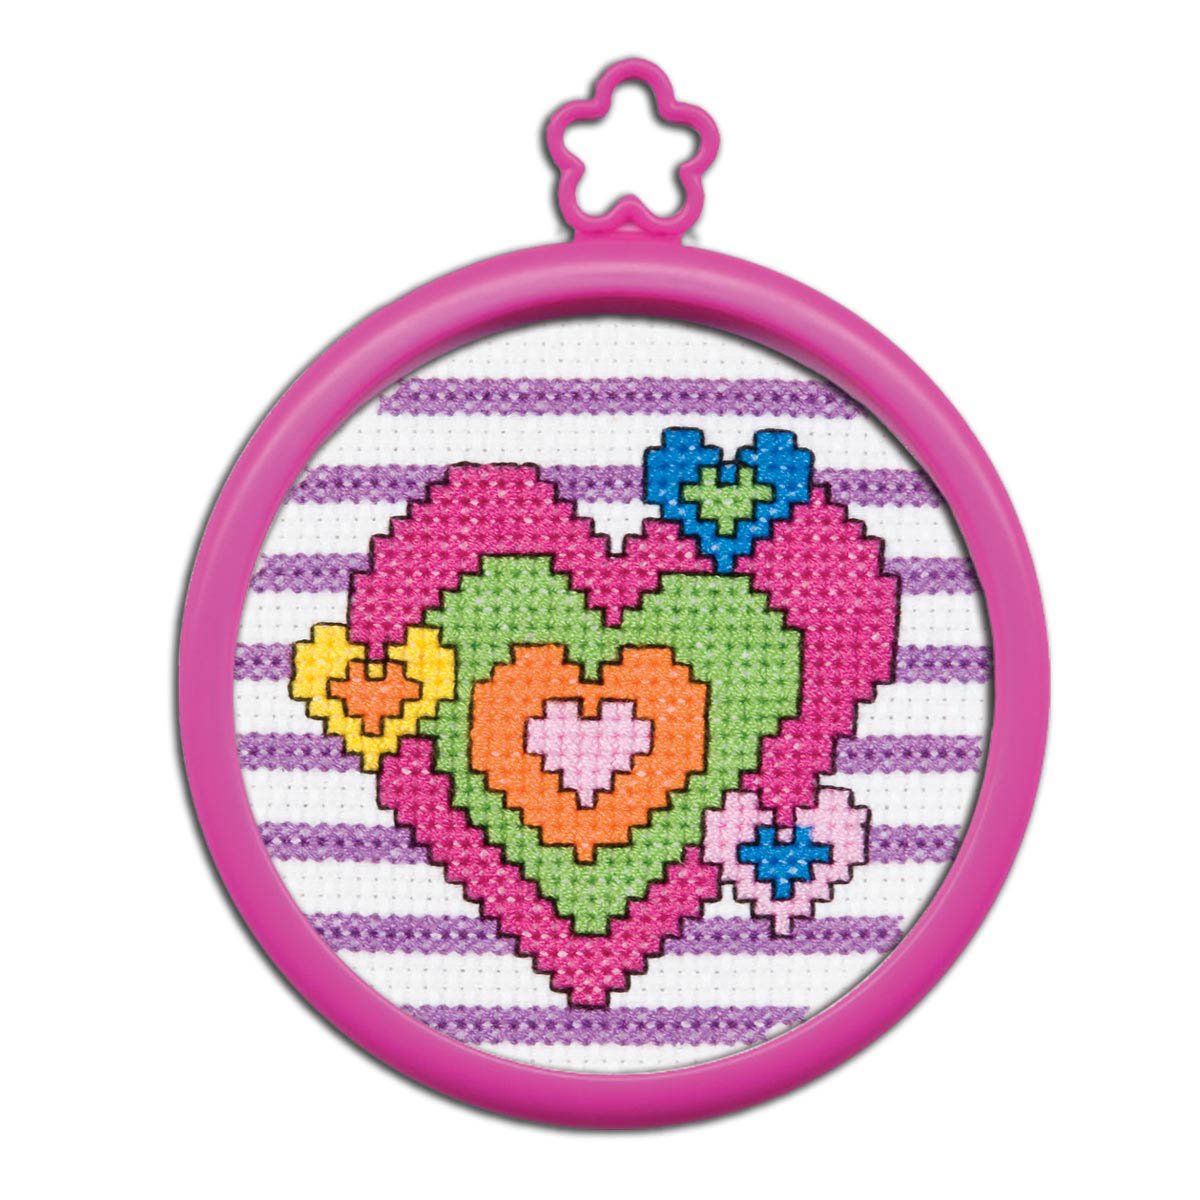 Bucilla ® My 1st Stitch™ - Counted Cross Stitch Kits - Mini - Heart - 45457